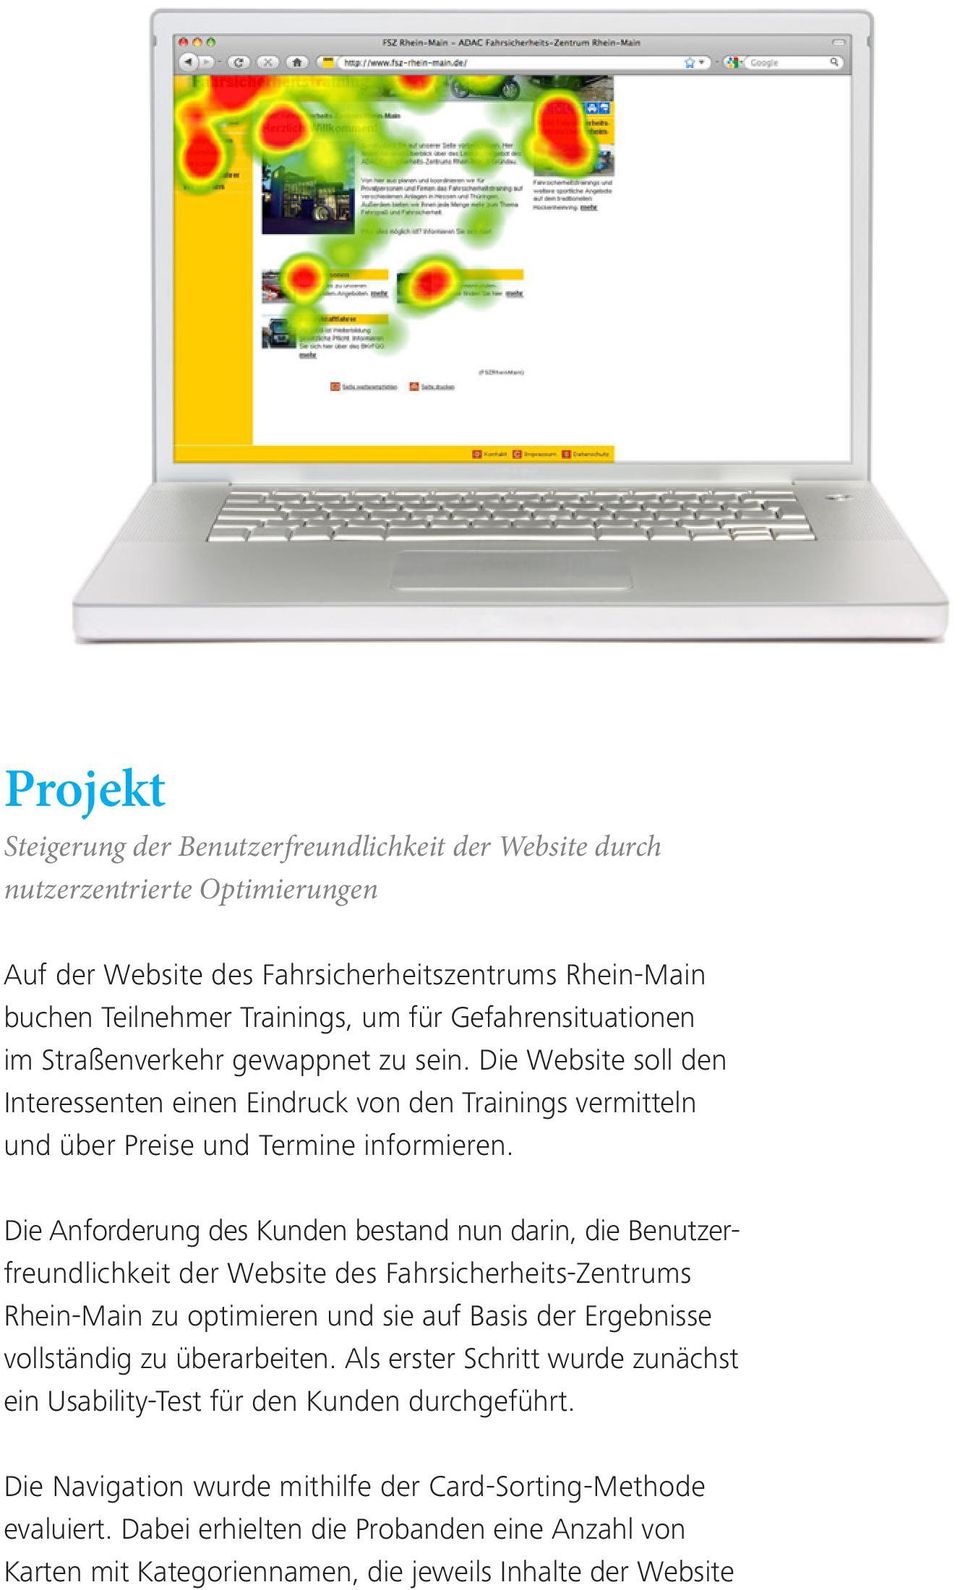 Die Anforderung des Kunden bestand nun darin, die Benutzer - freundlichkeit der Website des Fahrsicherheits-Zentrums Rhein-Main zu optimieren und sie auf Basis der Ergeb nisse vollständig zu